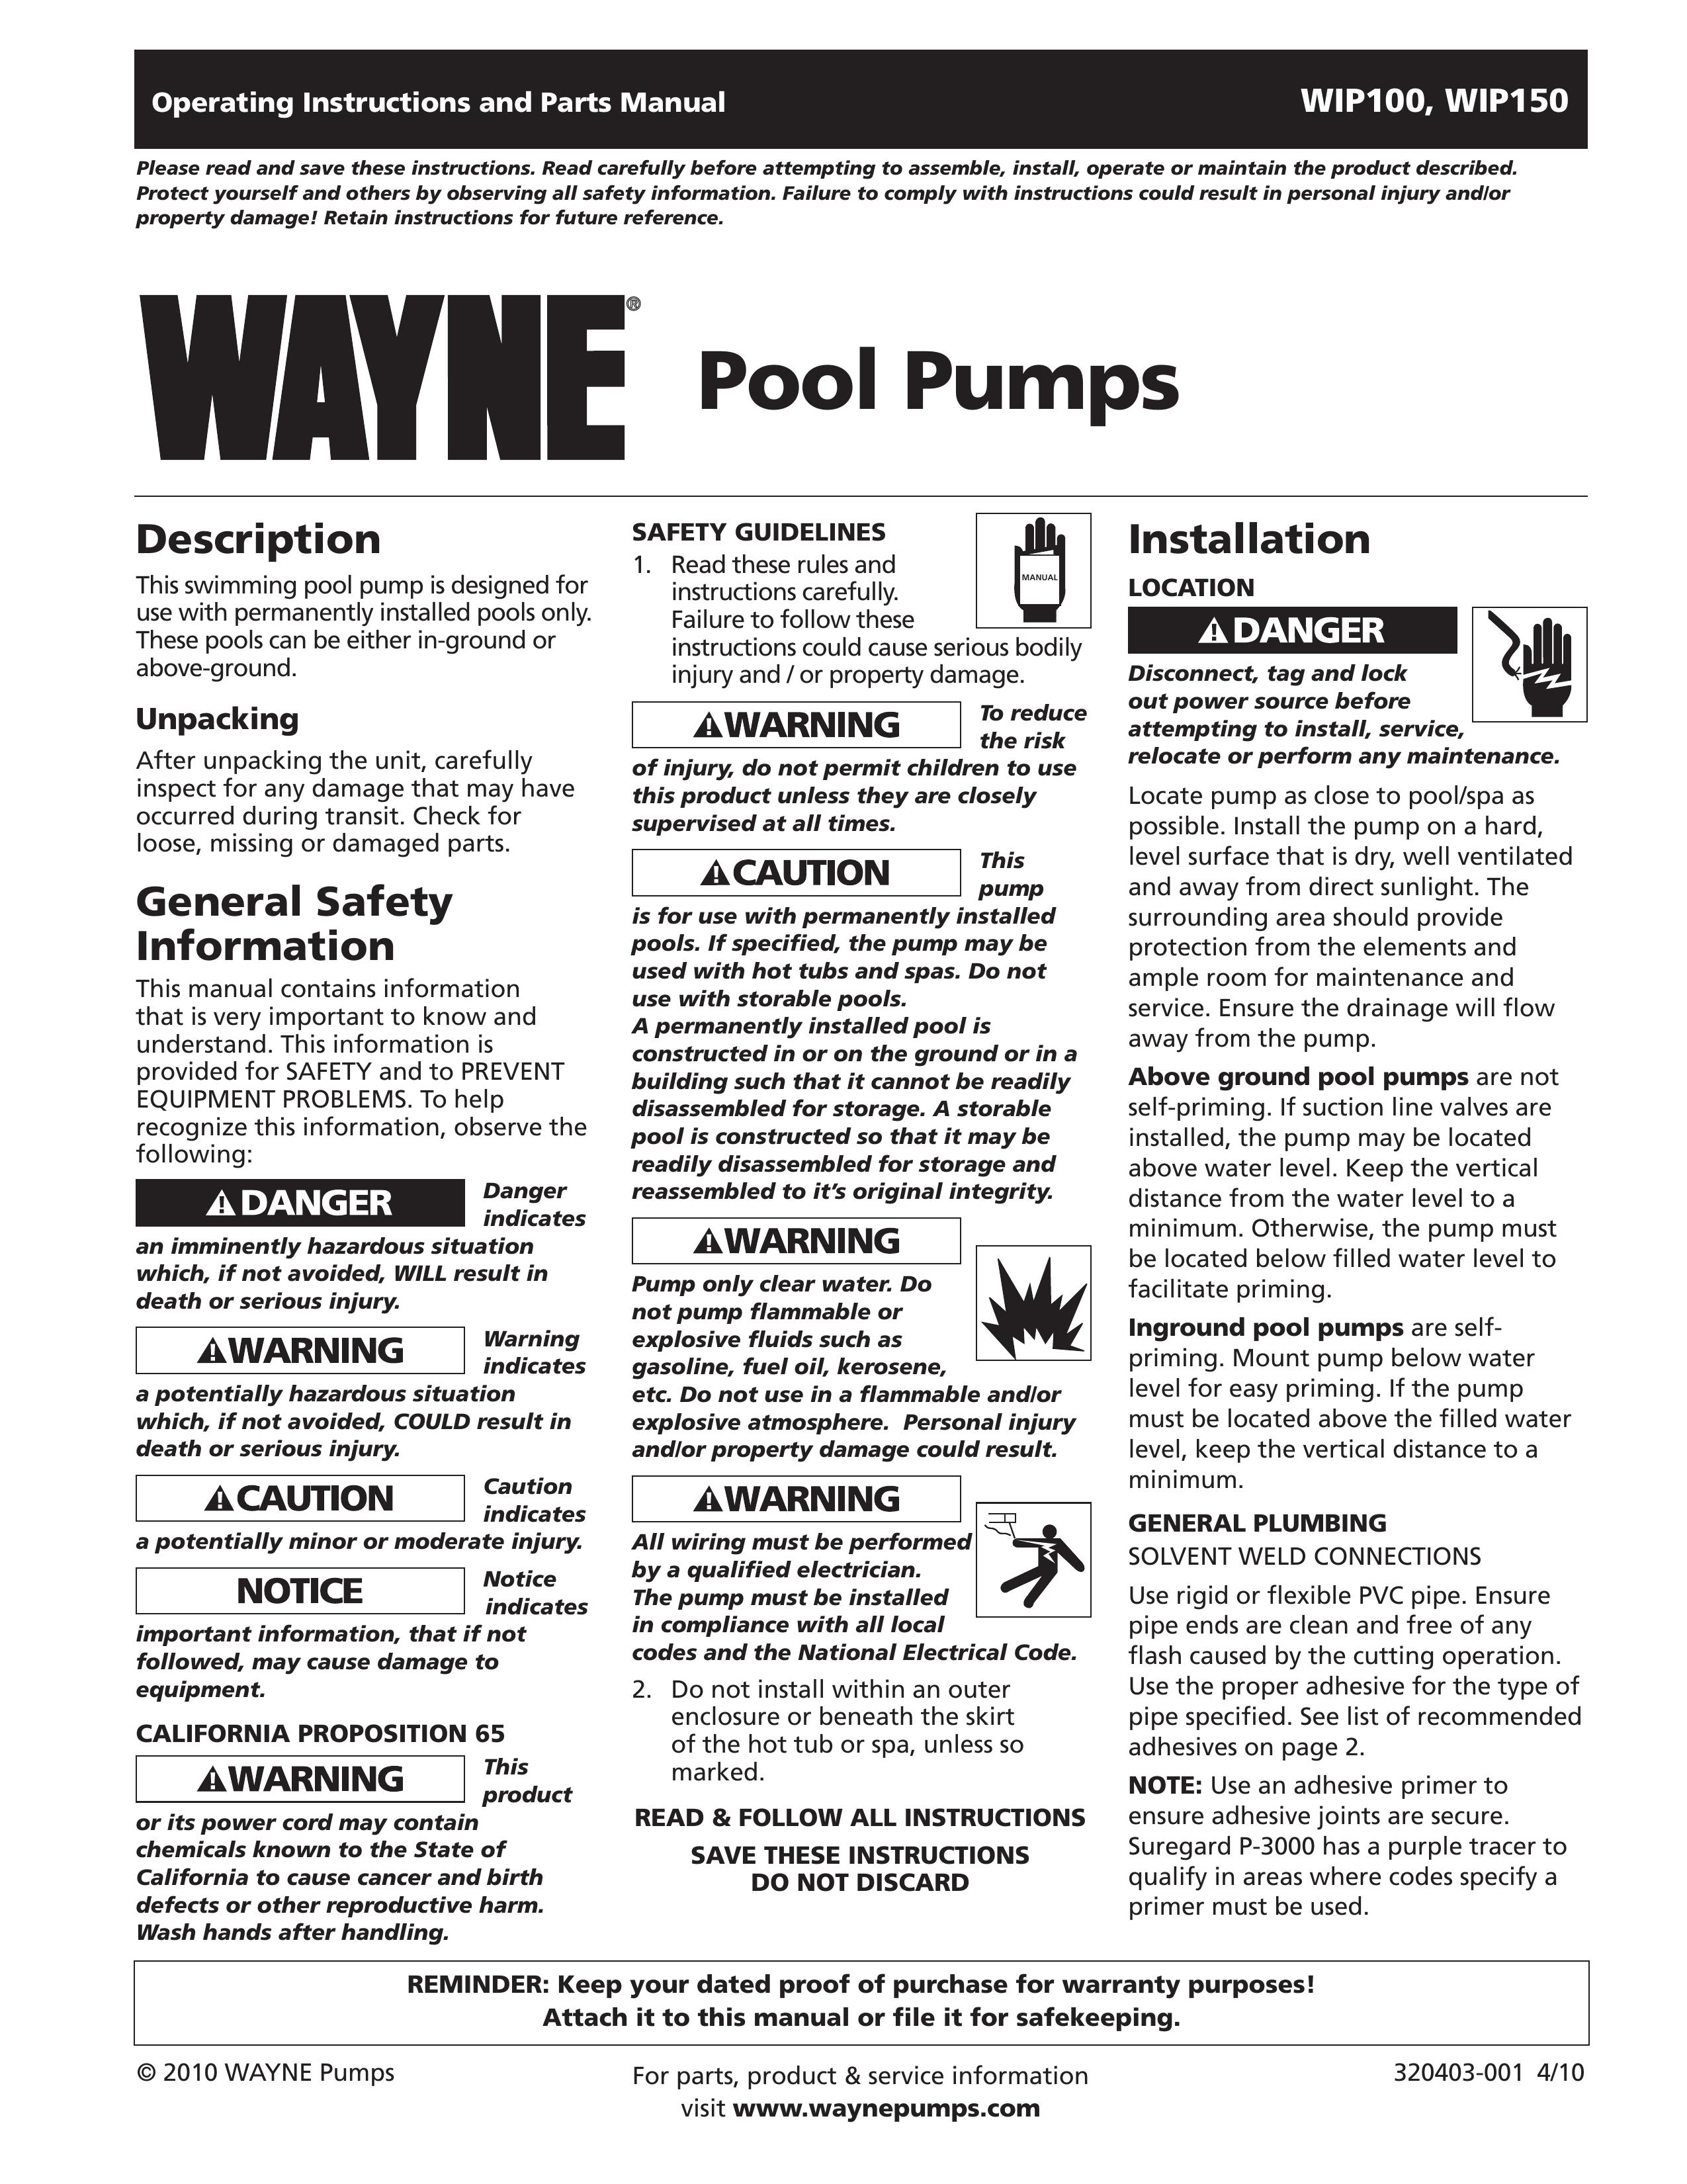 Wayne WIP150 Swimming Pool Pump User Manual